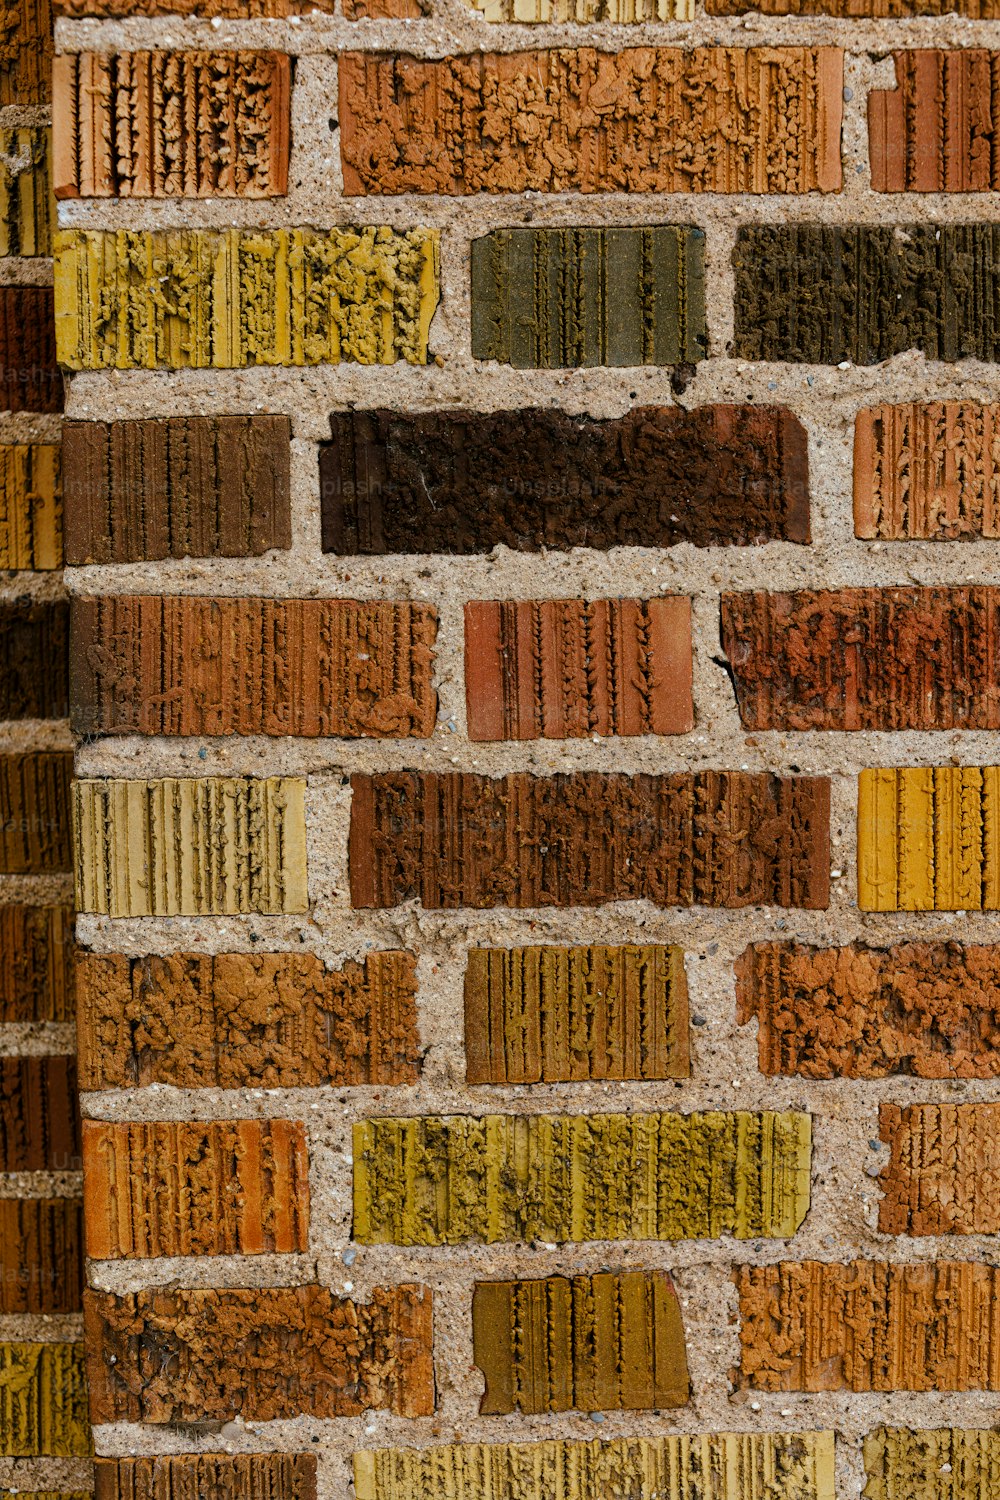 a close up of a brick wall made of bricks